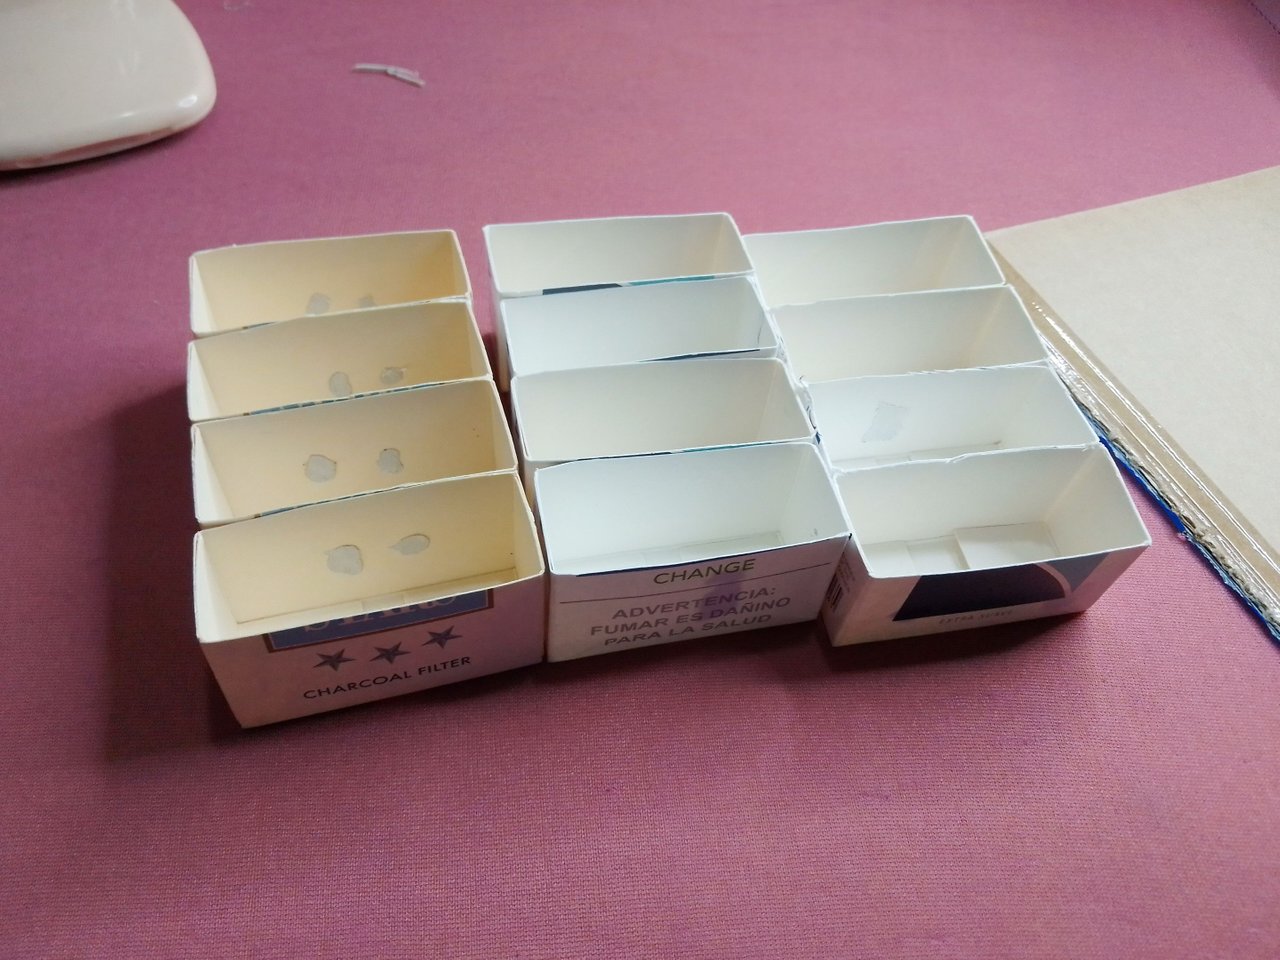 Manualidades: Organizador de abalorios hecho con cajas de